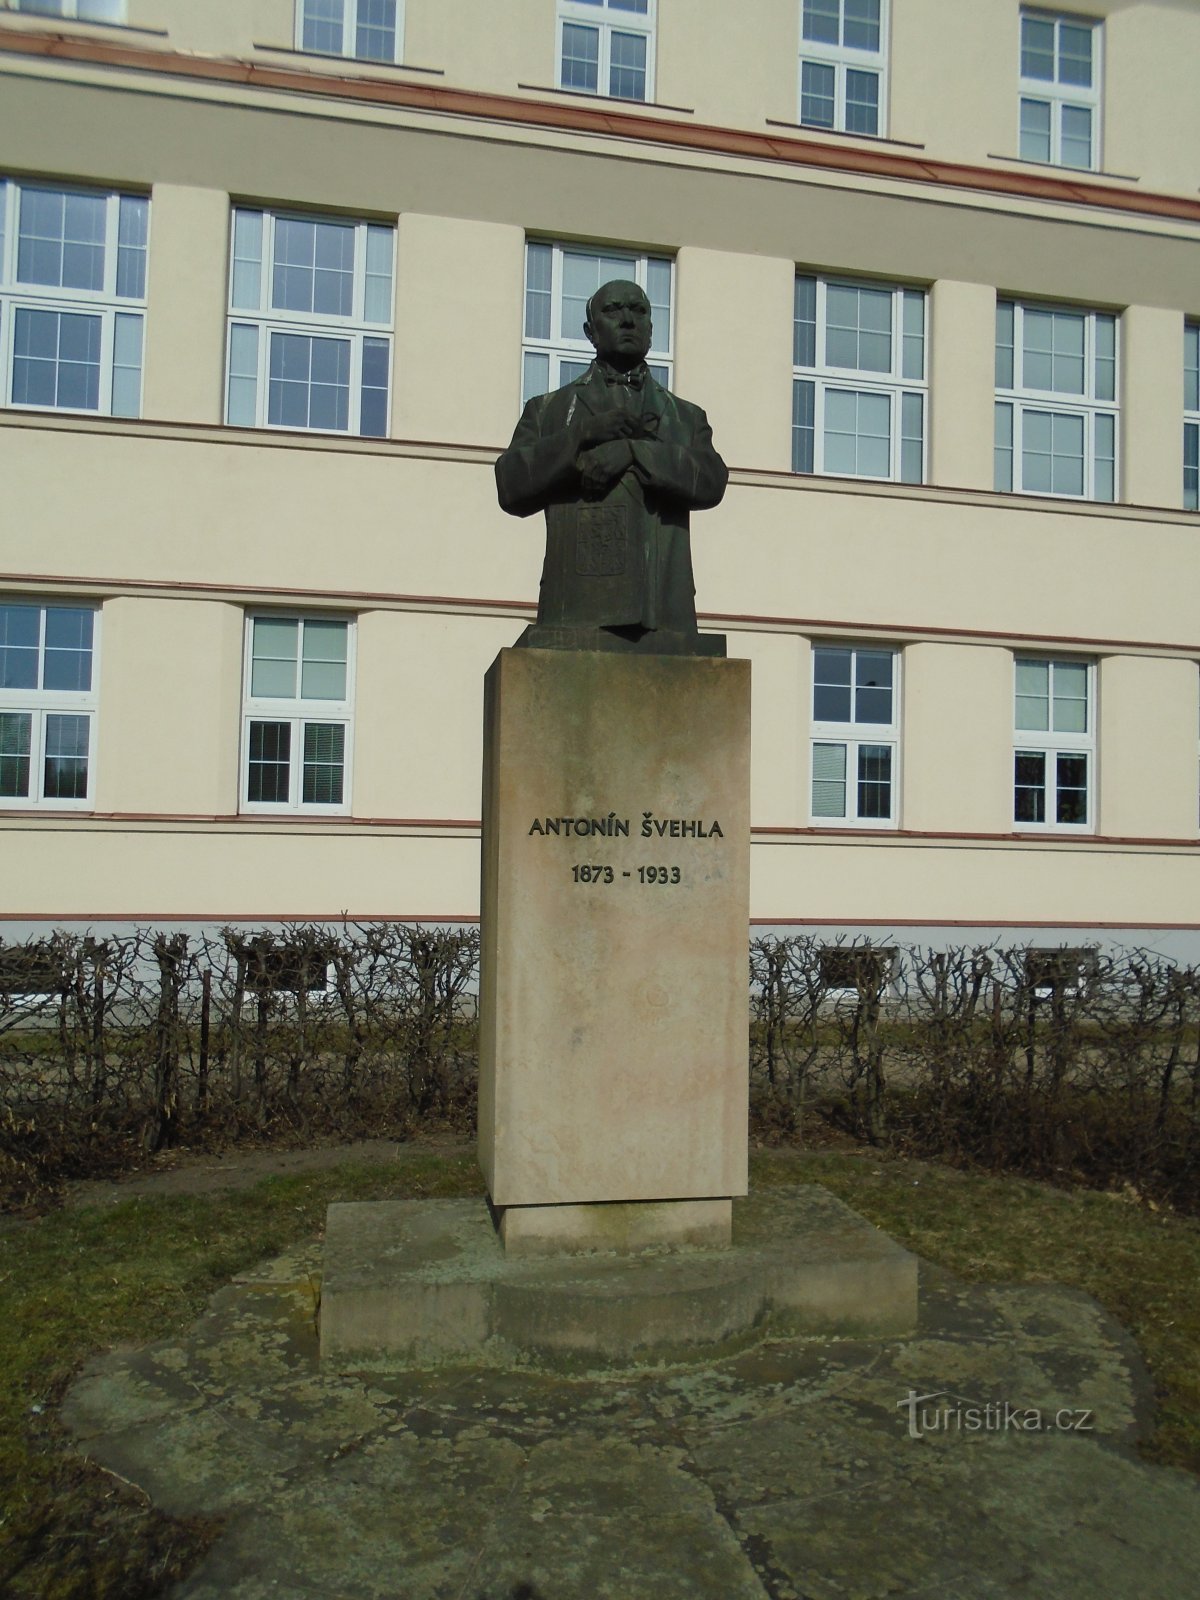 Spomenik Antonínu Švehli (Hradec Králové, 4.3.2018. ožujka XNUMX.)